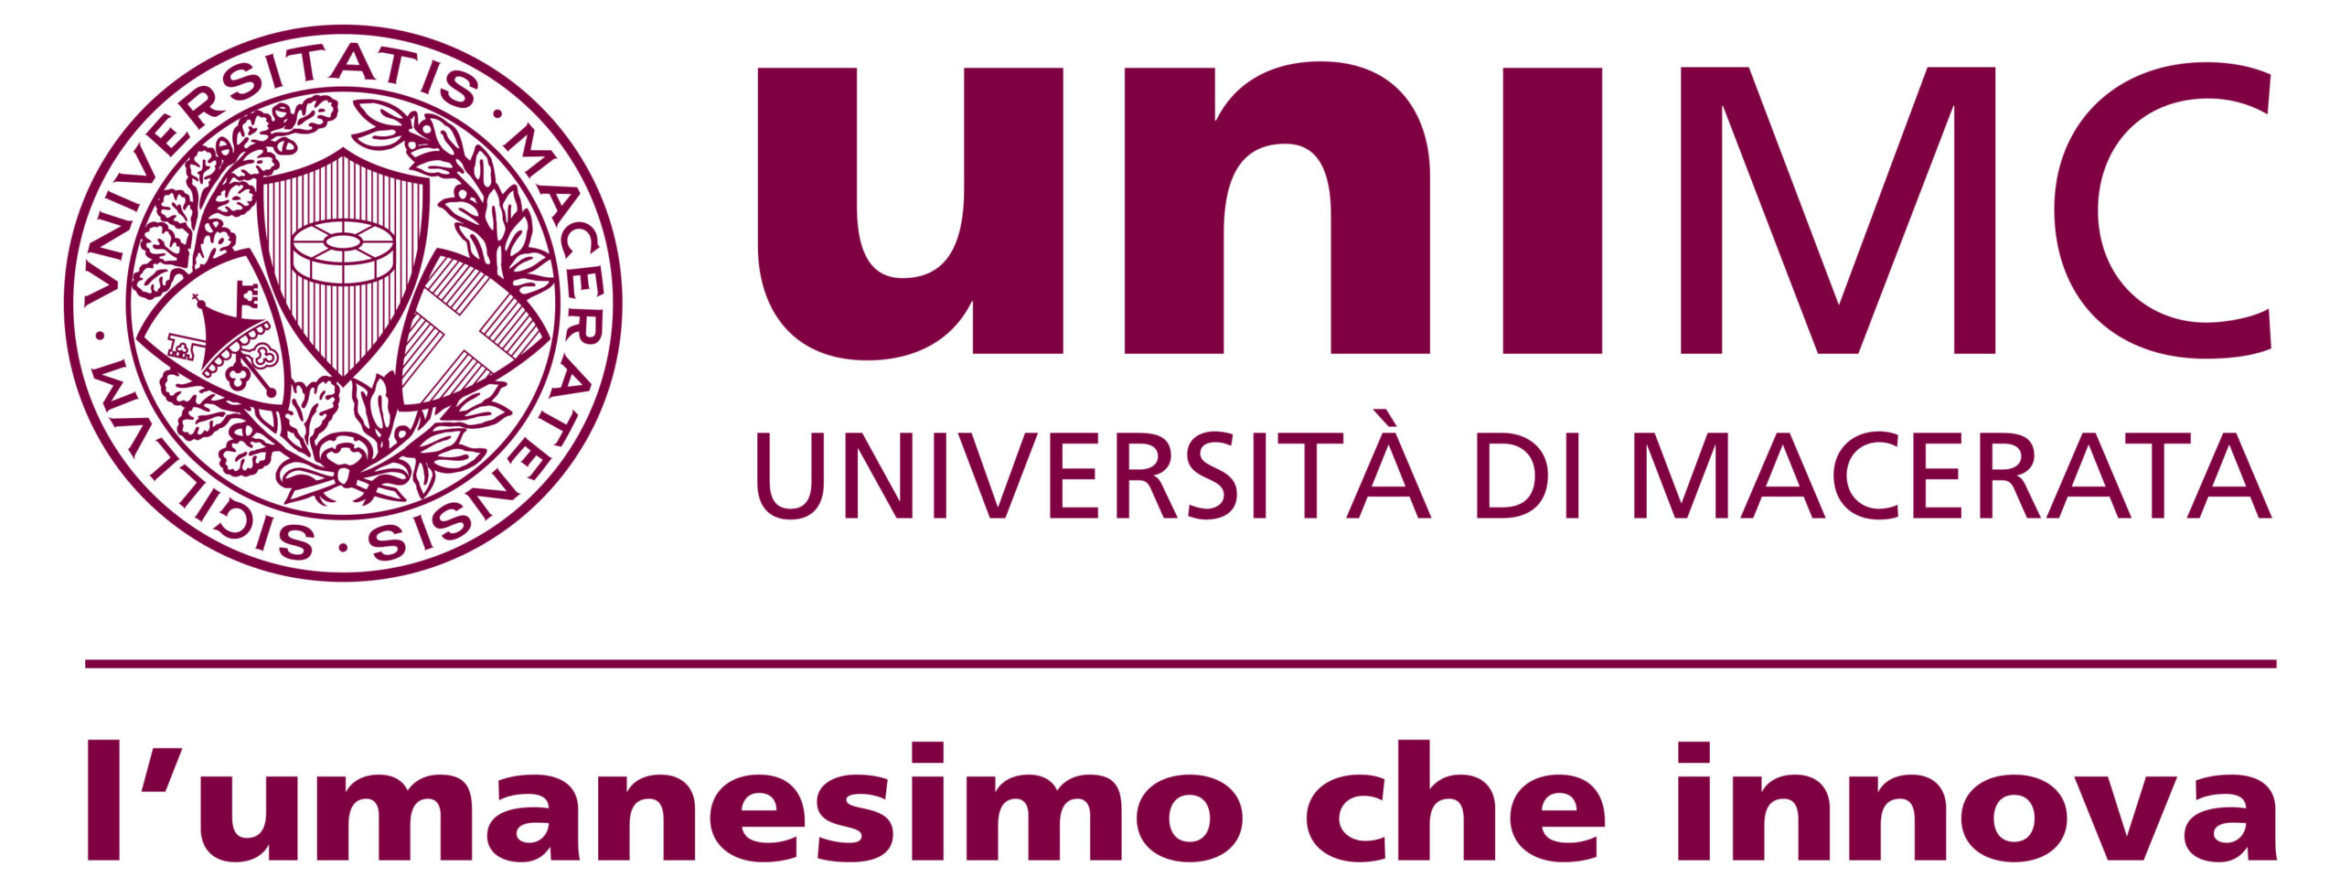 UNIMC_logo_IT-scaled.jpg